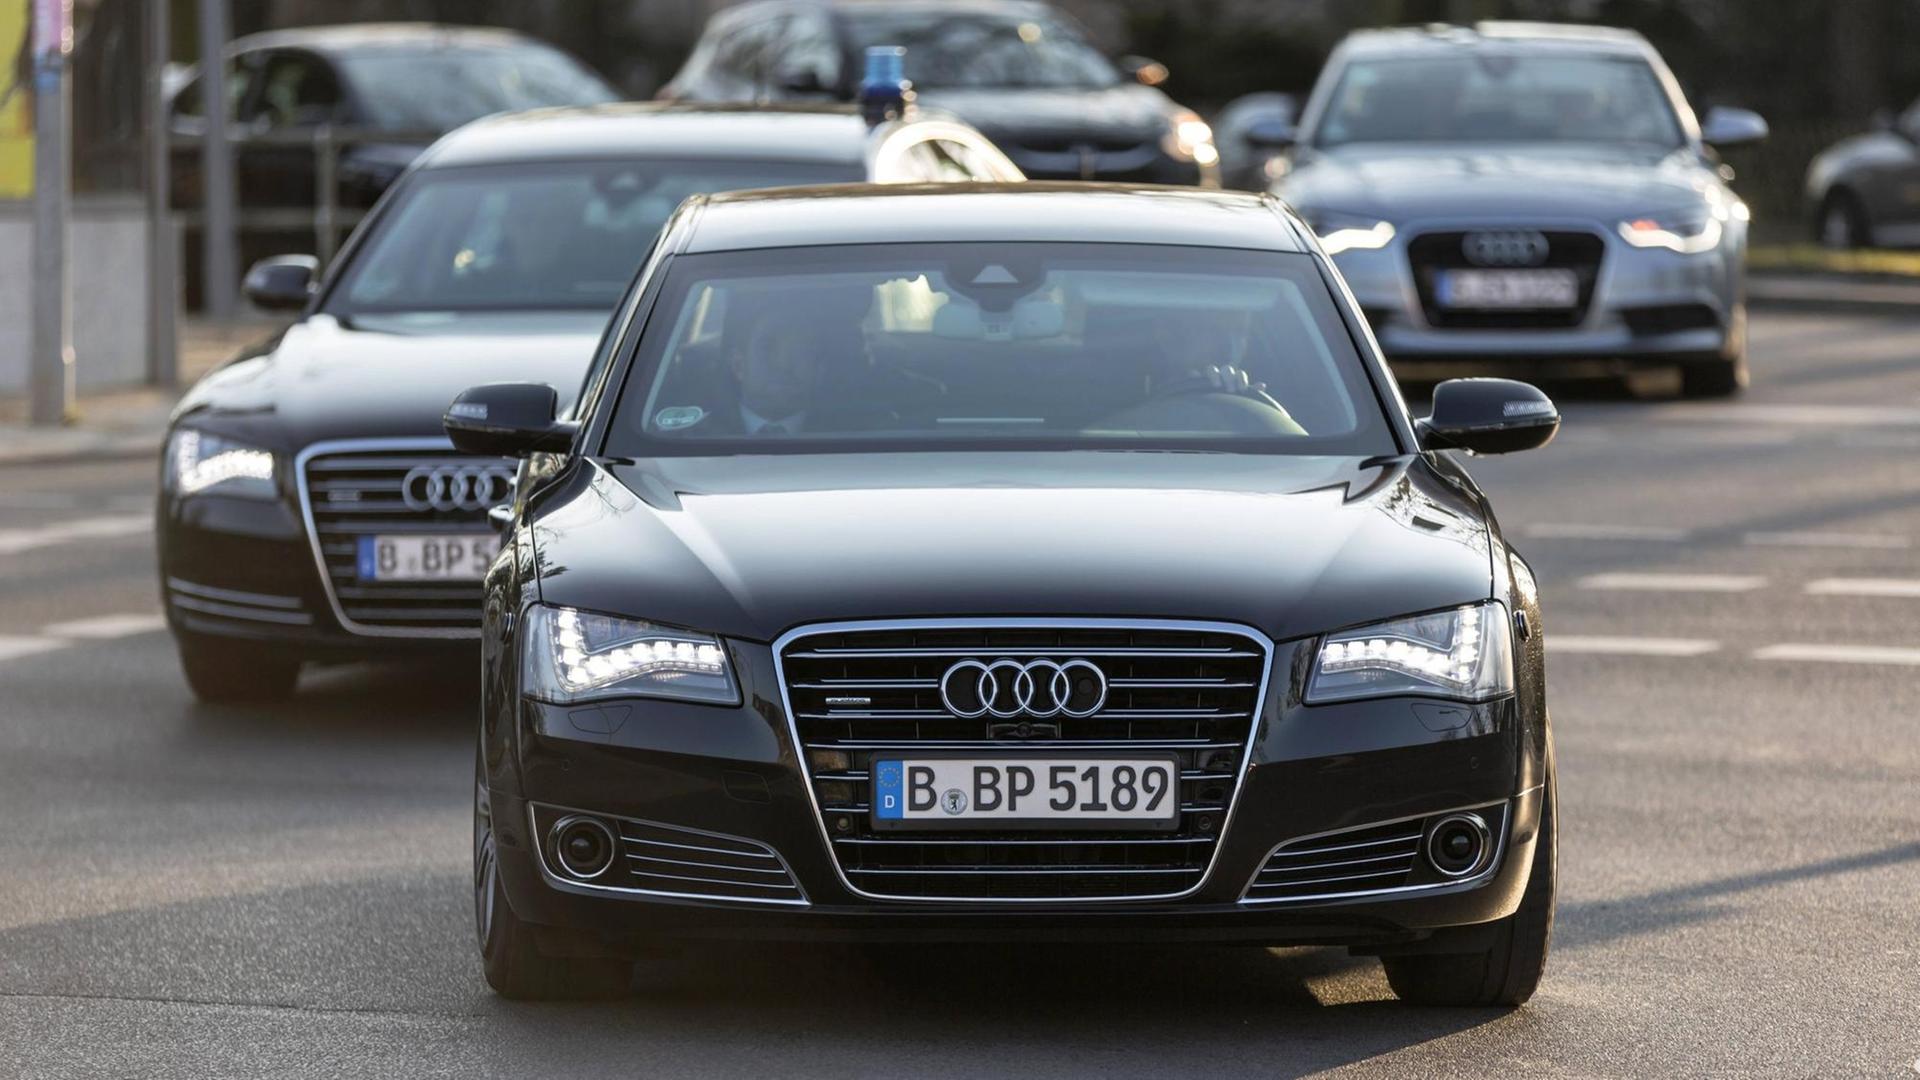 27.02.2015,Berlin,Deutschland,GER,Audi A8,der Dienstwagen vom reg. Bürgermeister der Stadt Berlin